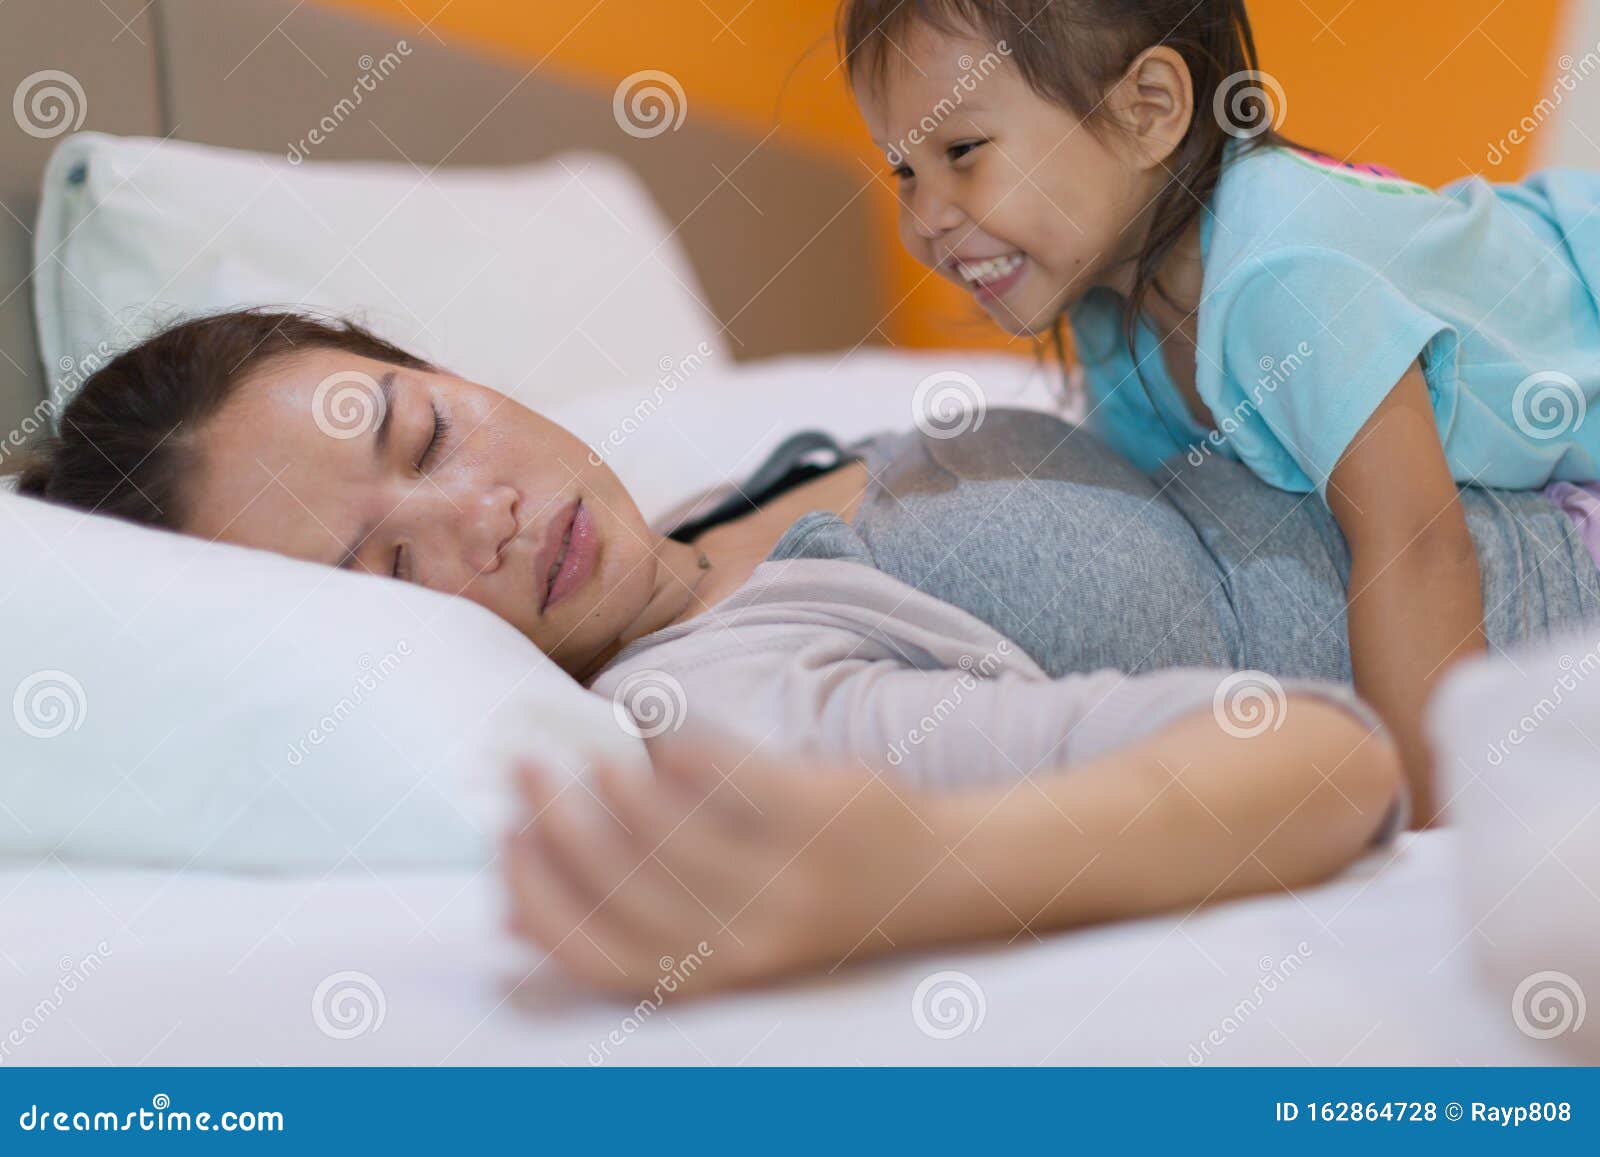 Сунул спящей маме. Спящие подростки девочки и мальчики. Спящий подросток и мама. Drinking mom сон.